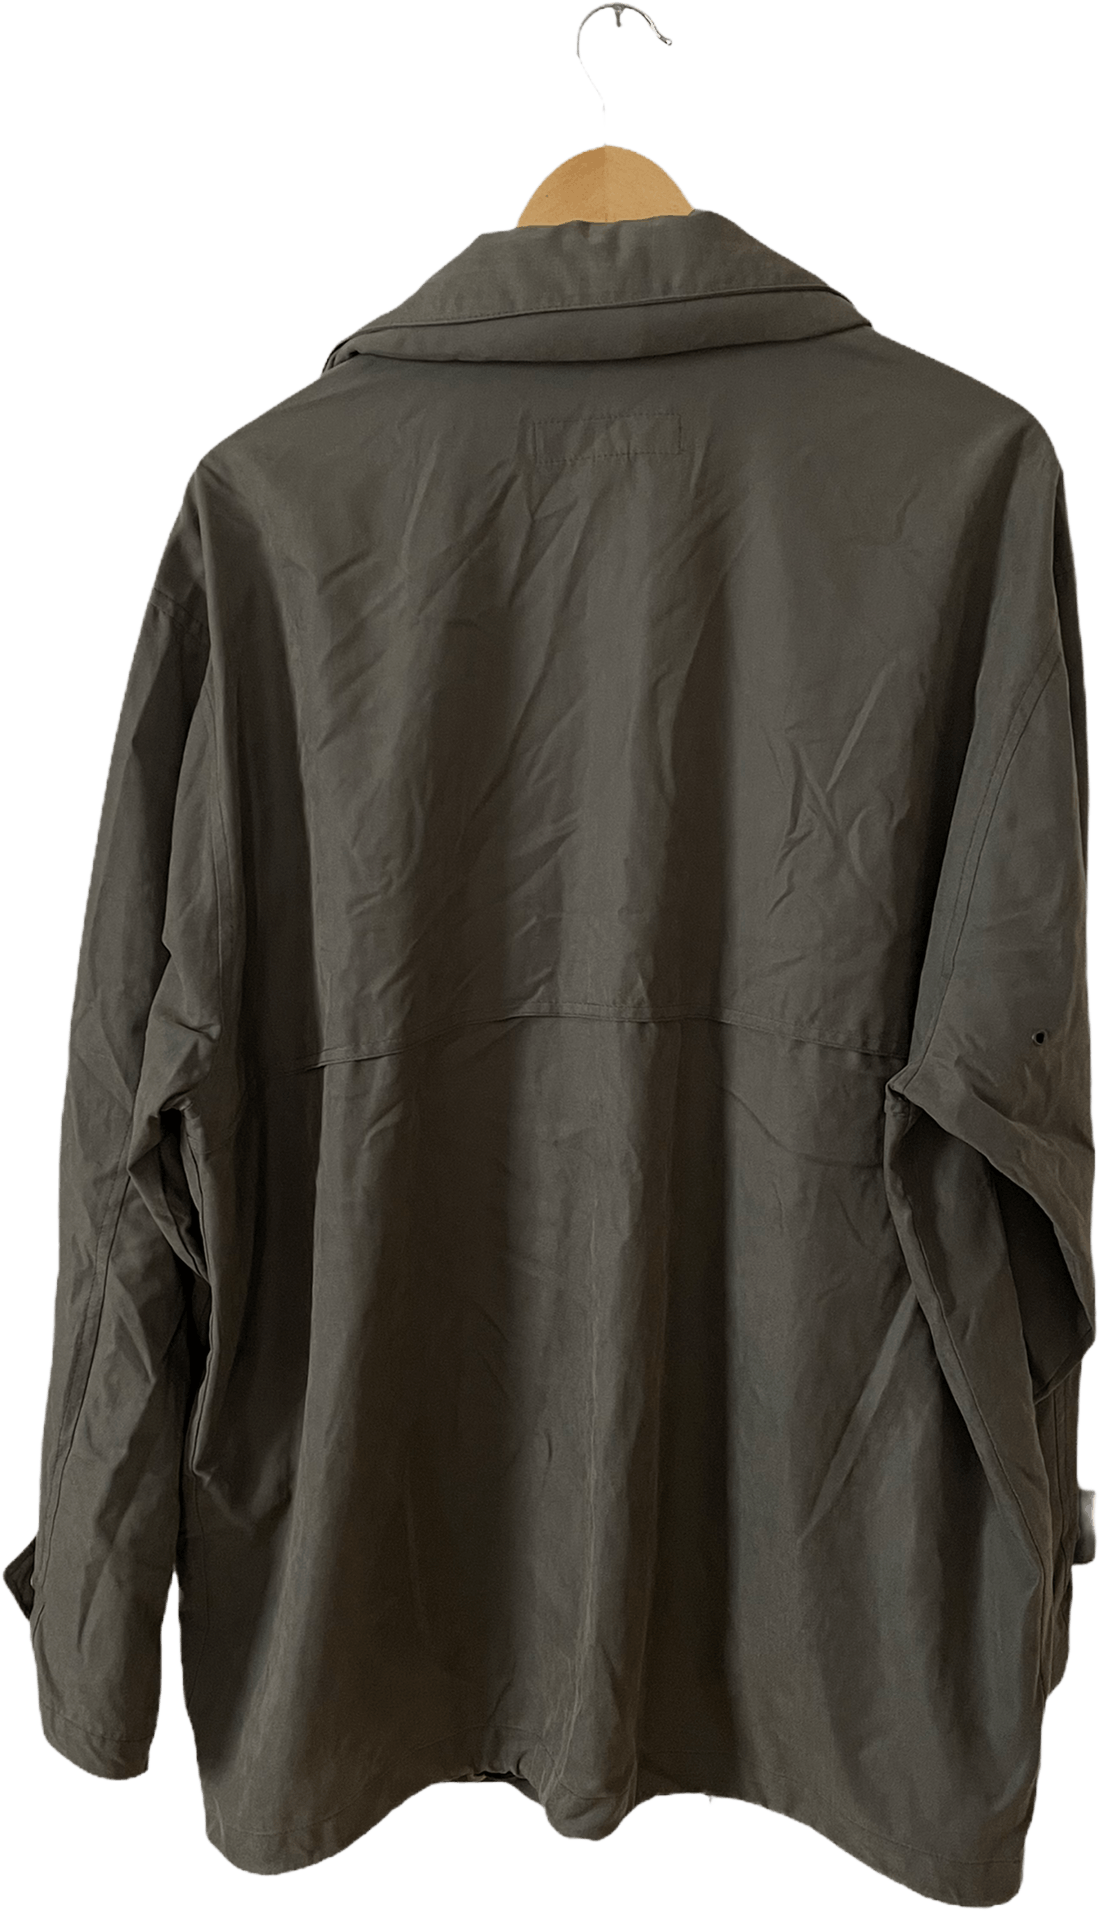 Vintage 90's Oversized Olive Green Windbreaker Jacket by London Fog ...